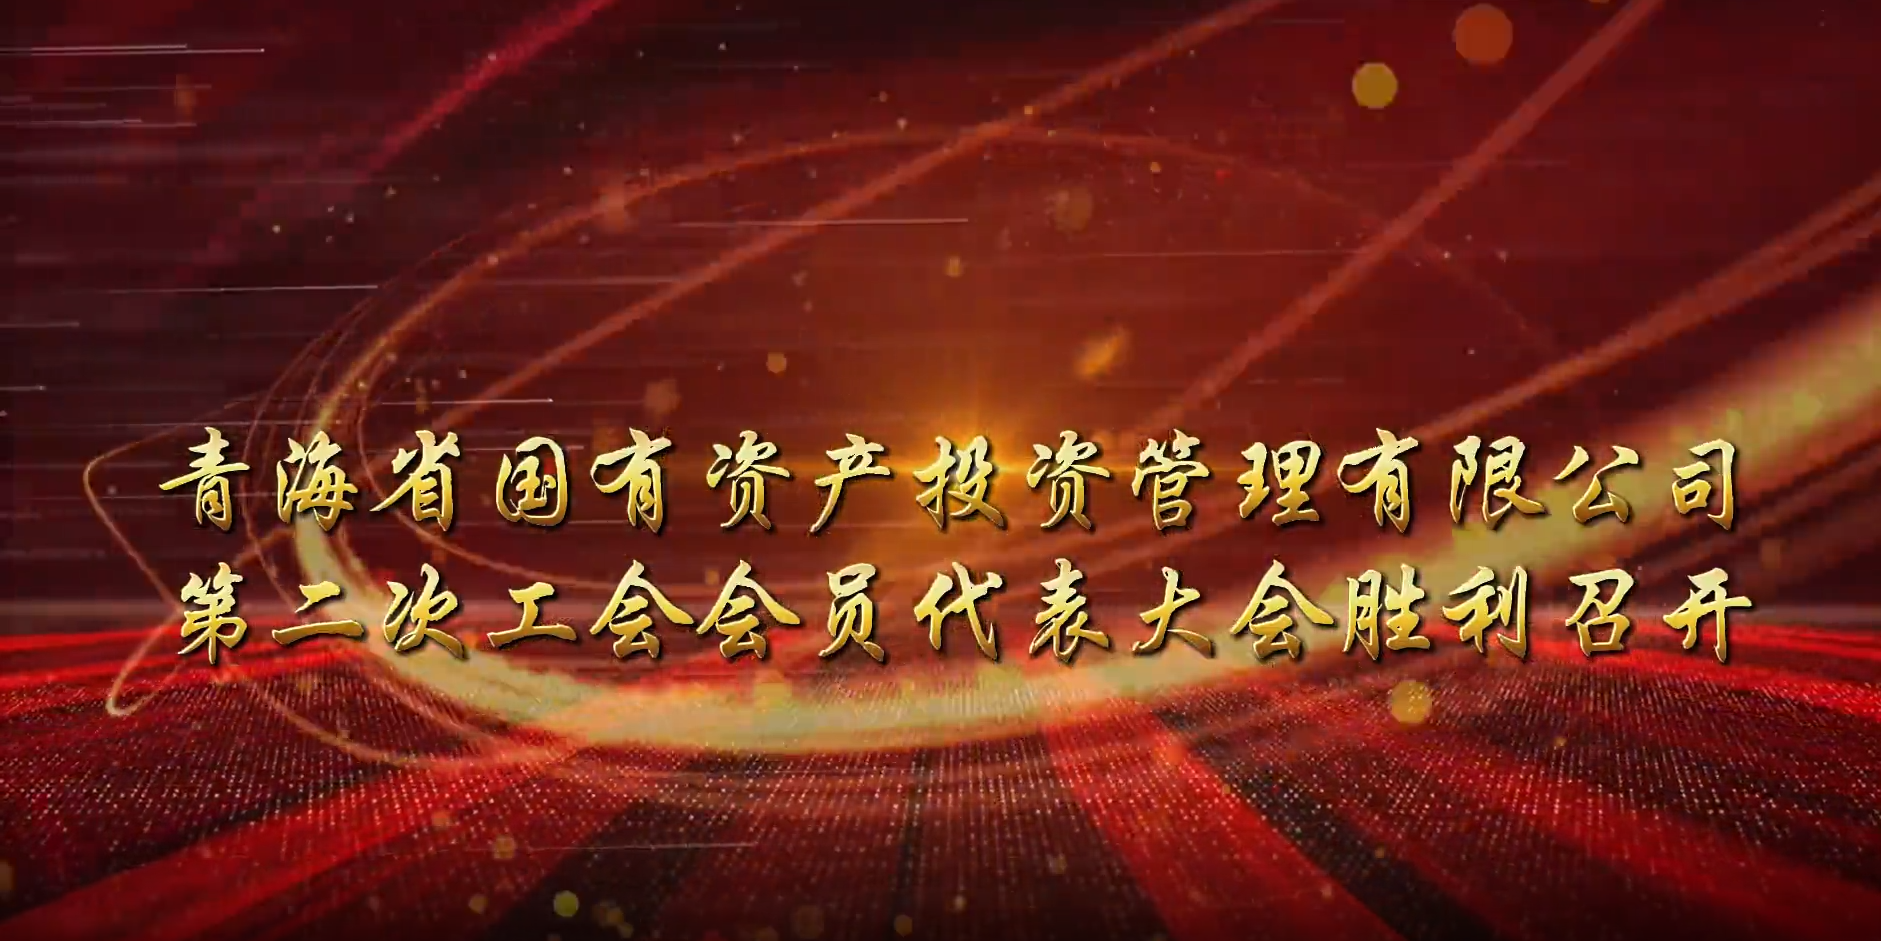 金沙电子(中国)集团有限公司第二次工会会员代表大会胜利召开